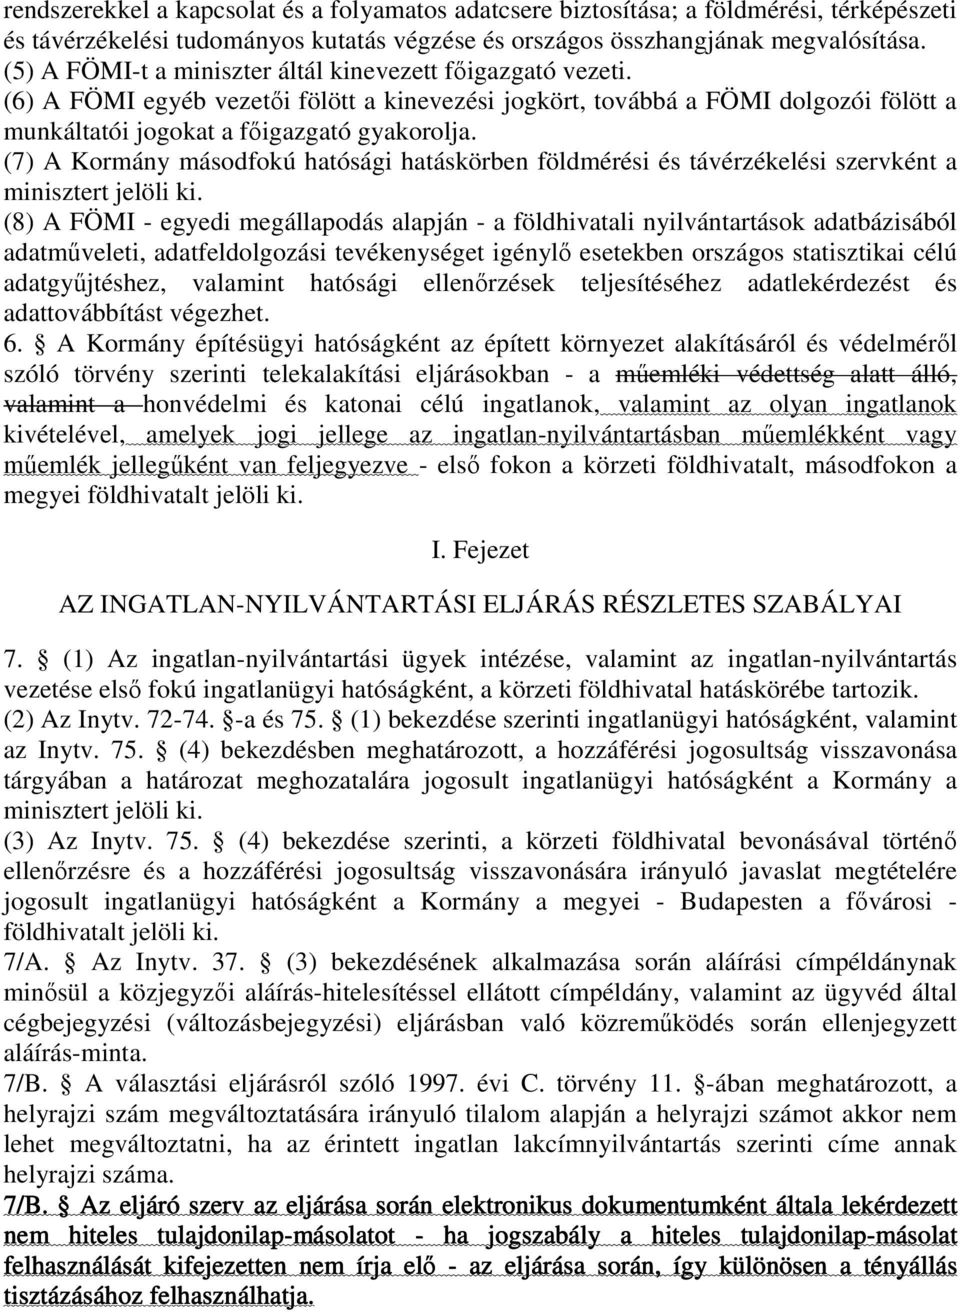 (7) A Kormány másodfokú hatósági hatáskörben földmérési és távérzékelési szervként a minisztert jelöli ki.